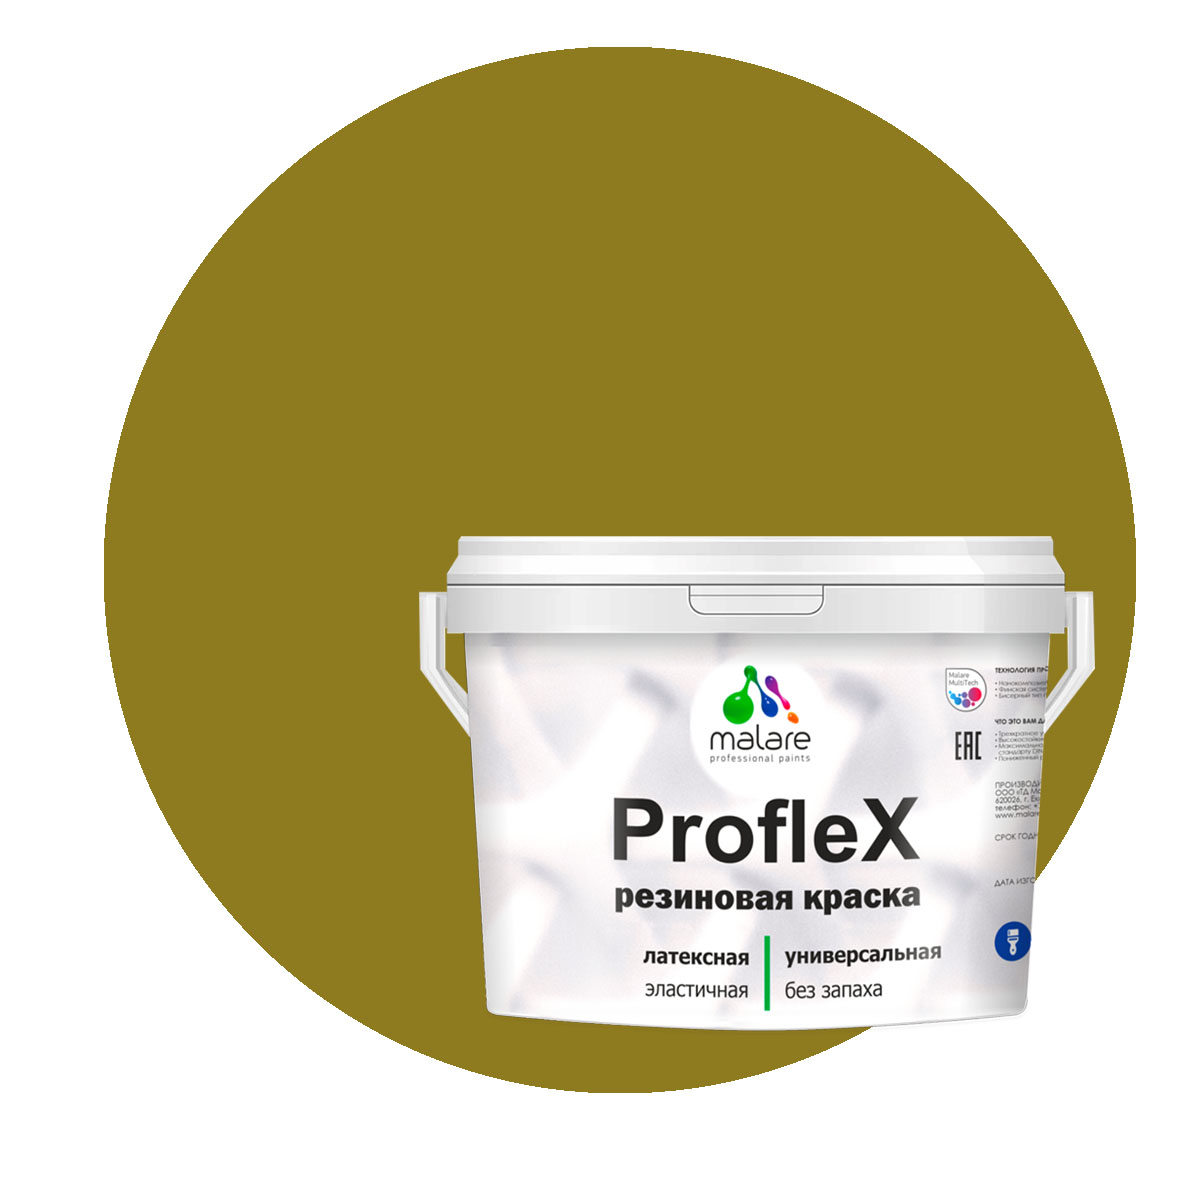 Краска Malare ProfleX для фасадов, интерьера, мебели, греческая олива, 10 кг. щелочной очиститель фасадов зданий plex